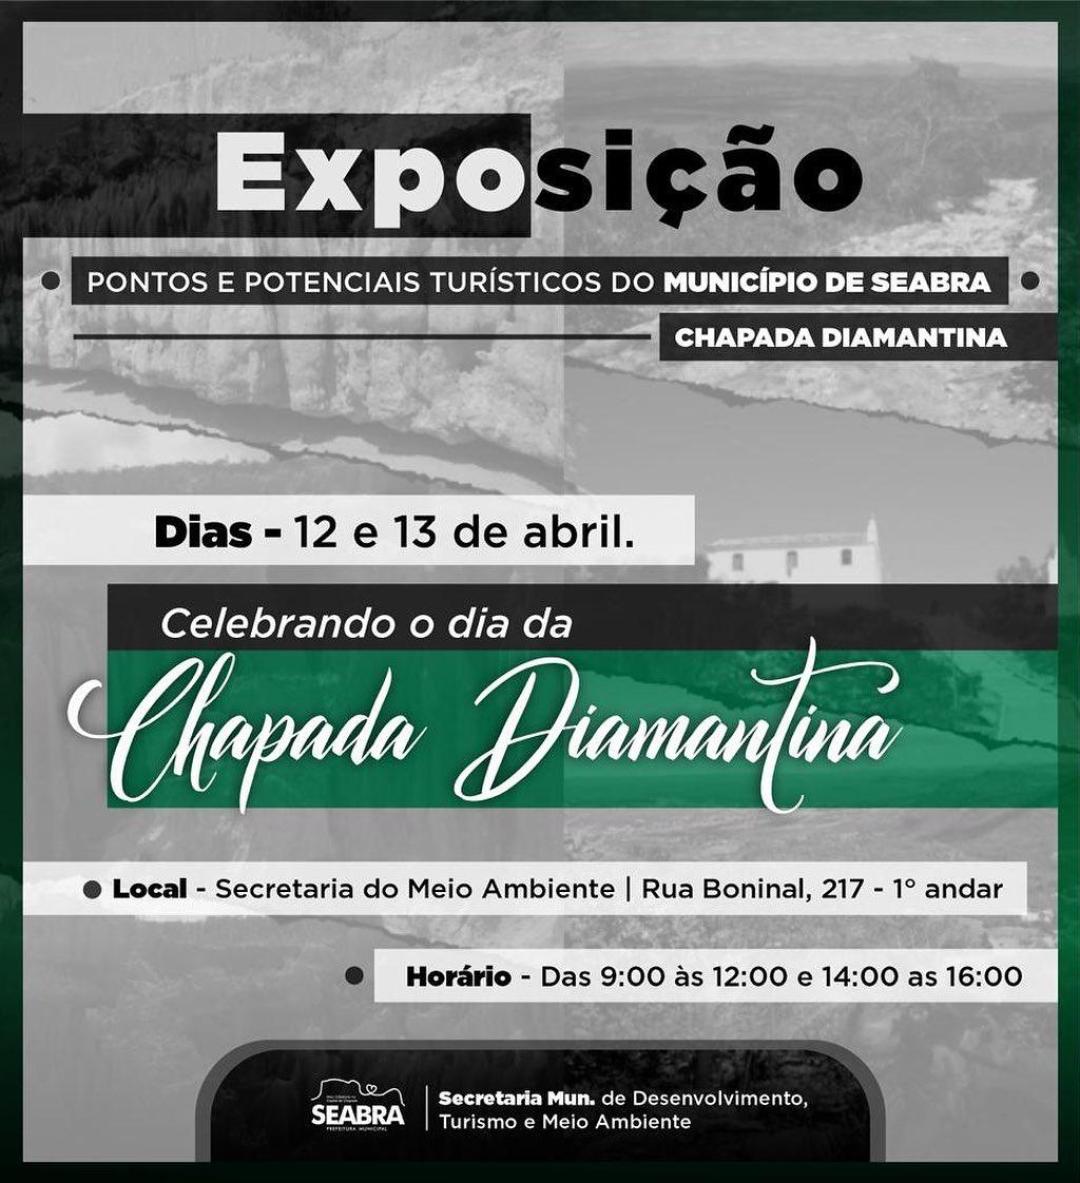 Exposição dos pontos e potenciais turísticos do município de Seabra - Chapada Diamantina.